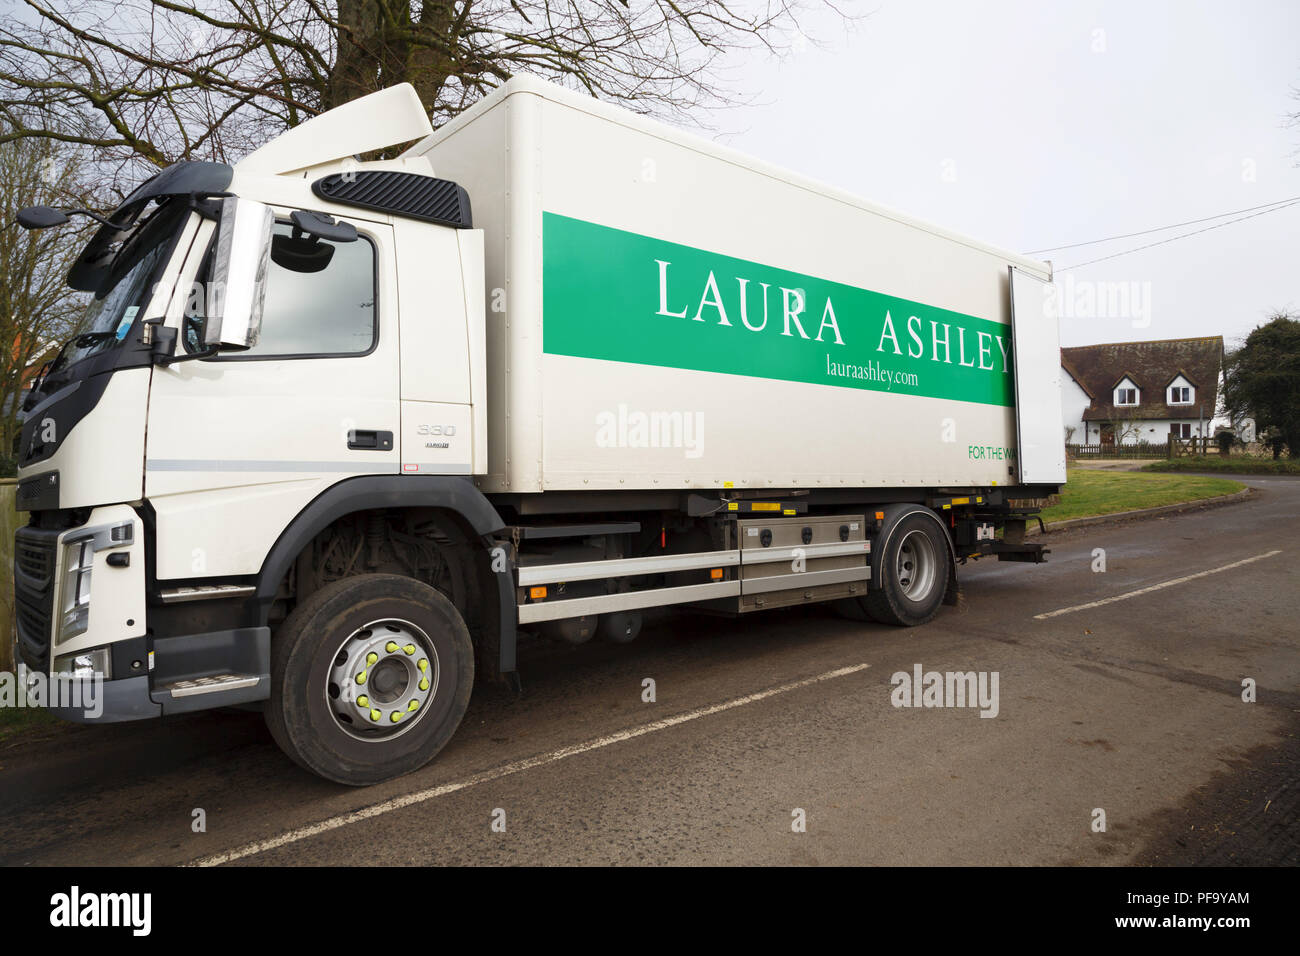 Buckingham, Großbritannien - Februar 06., 2018. Laura Ashley macht eine Lieferung an ein Haus in Buckinghamshire. Anteile an Laura Ashley sind seit 2015 um 90% gesunken. Stockfoto